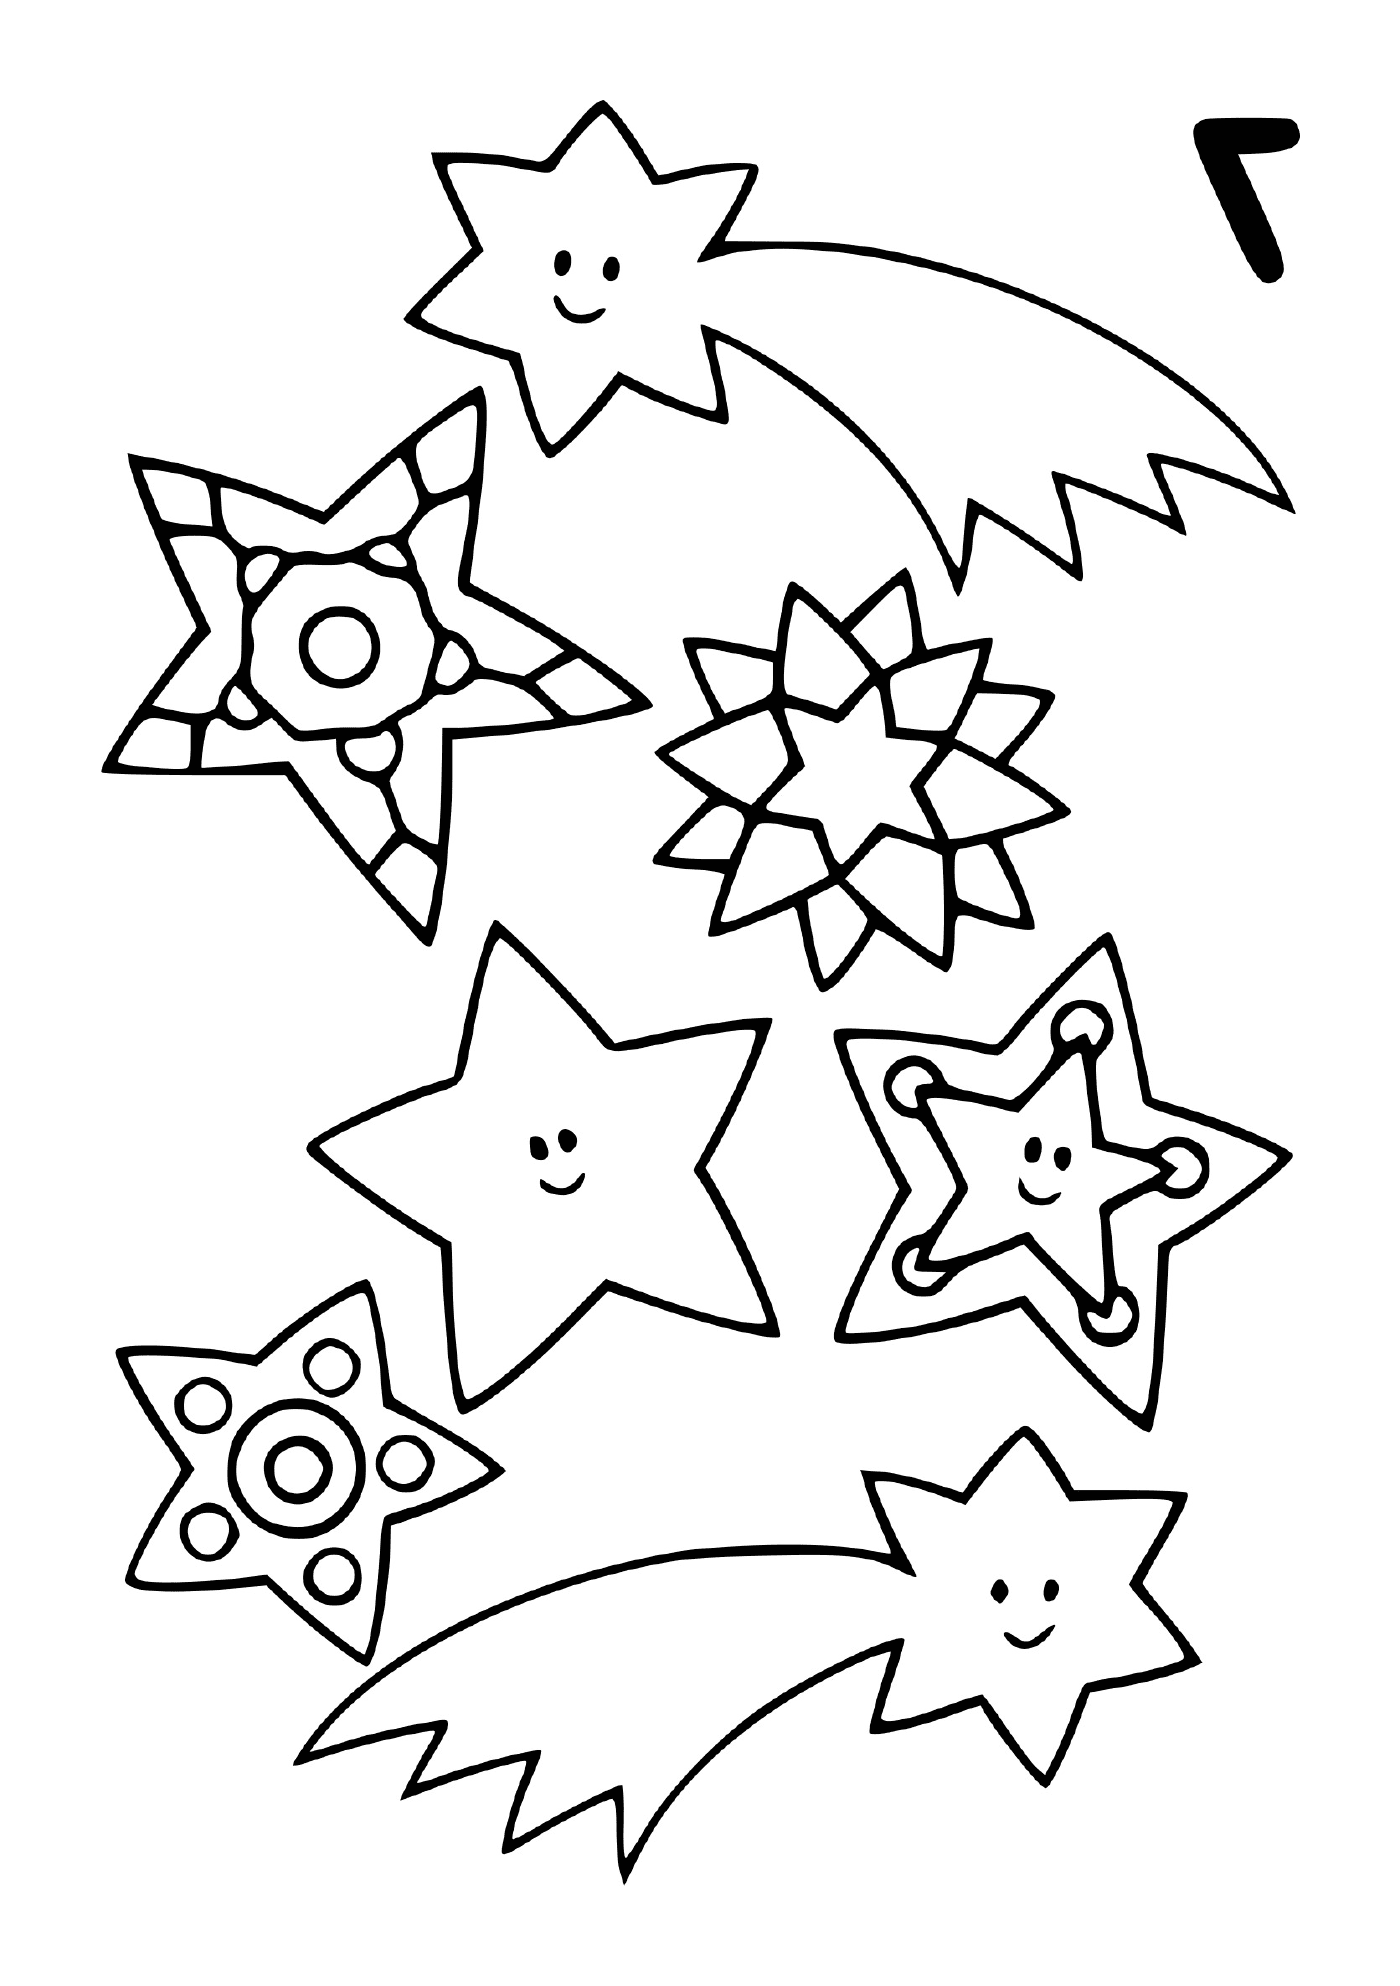  Eine Reihe von Sternschnuppen in verschiedenen Formen 